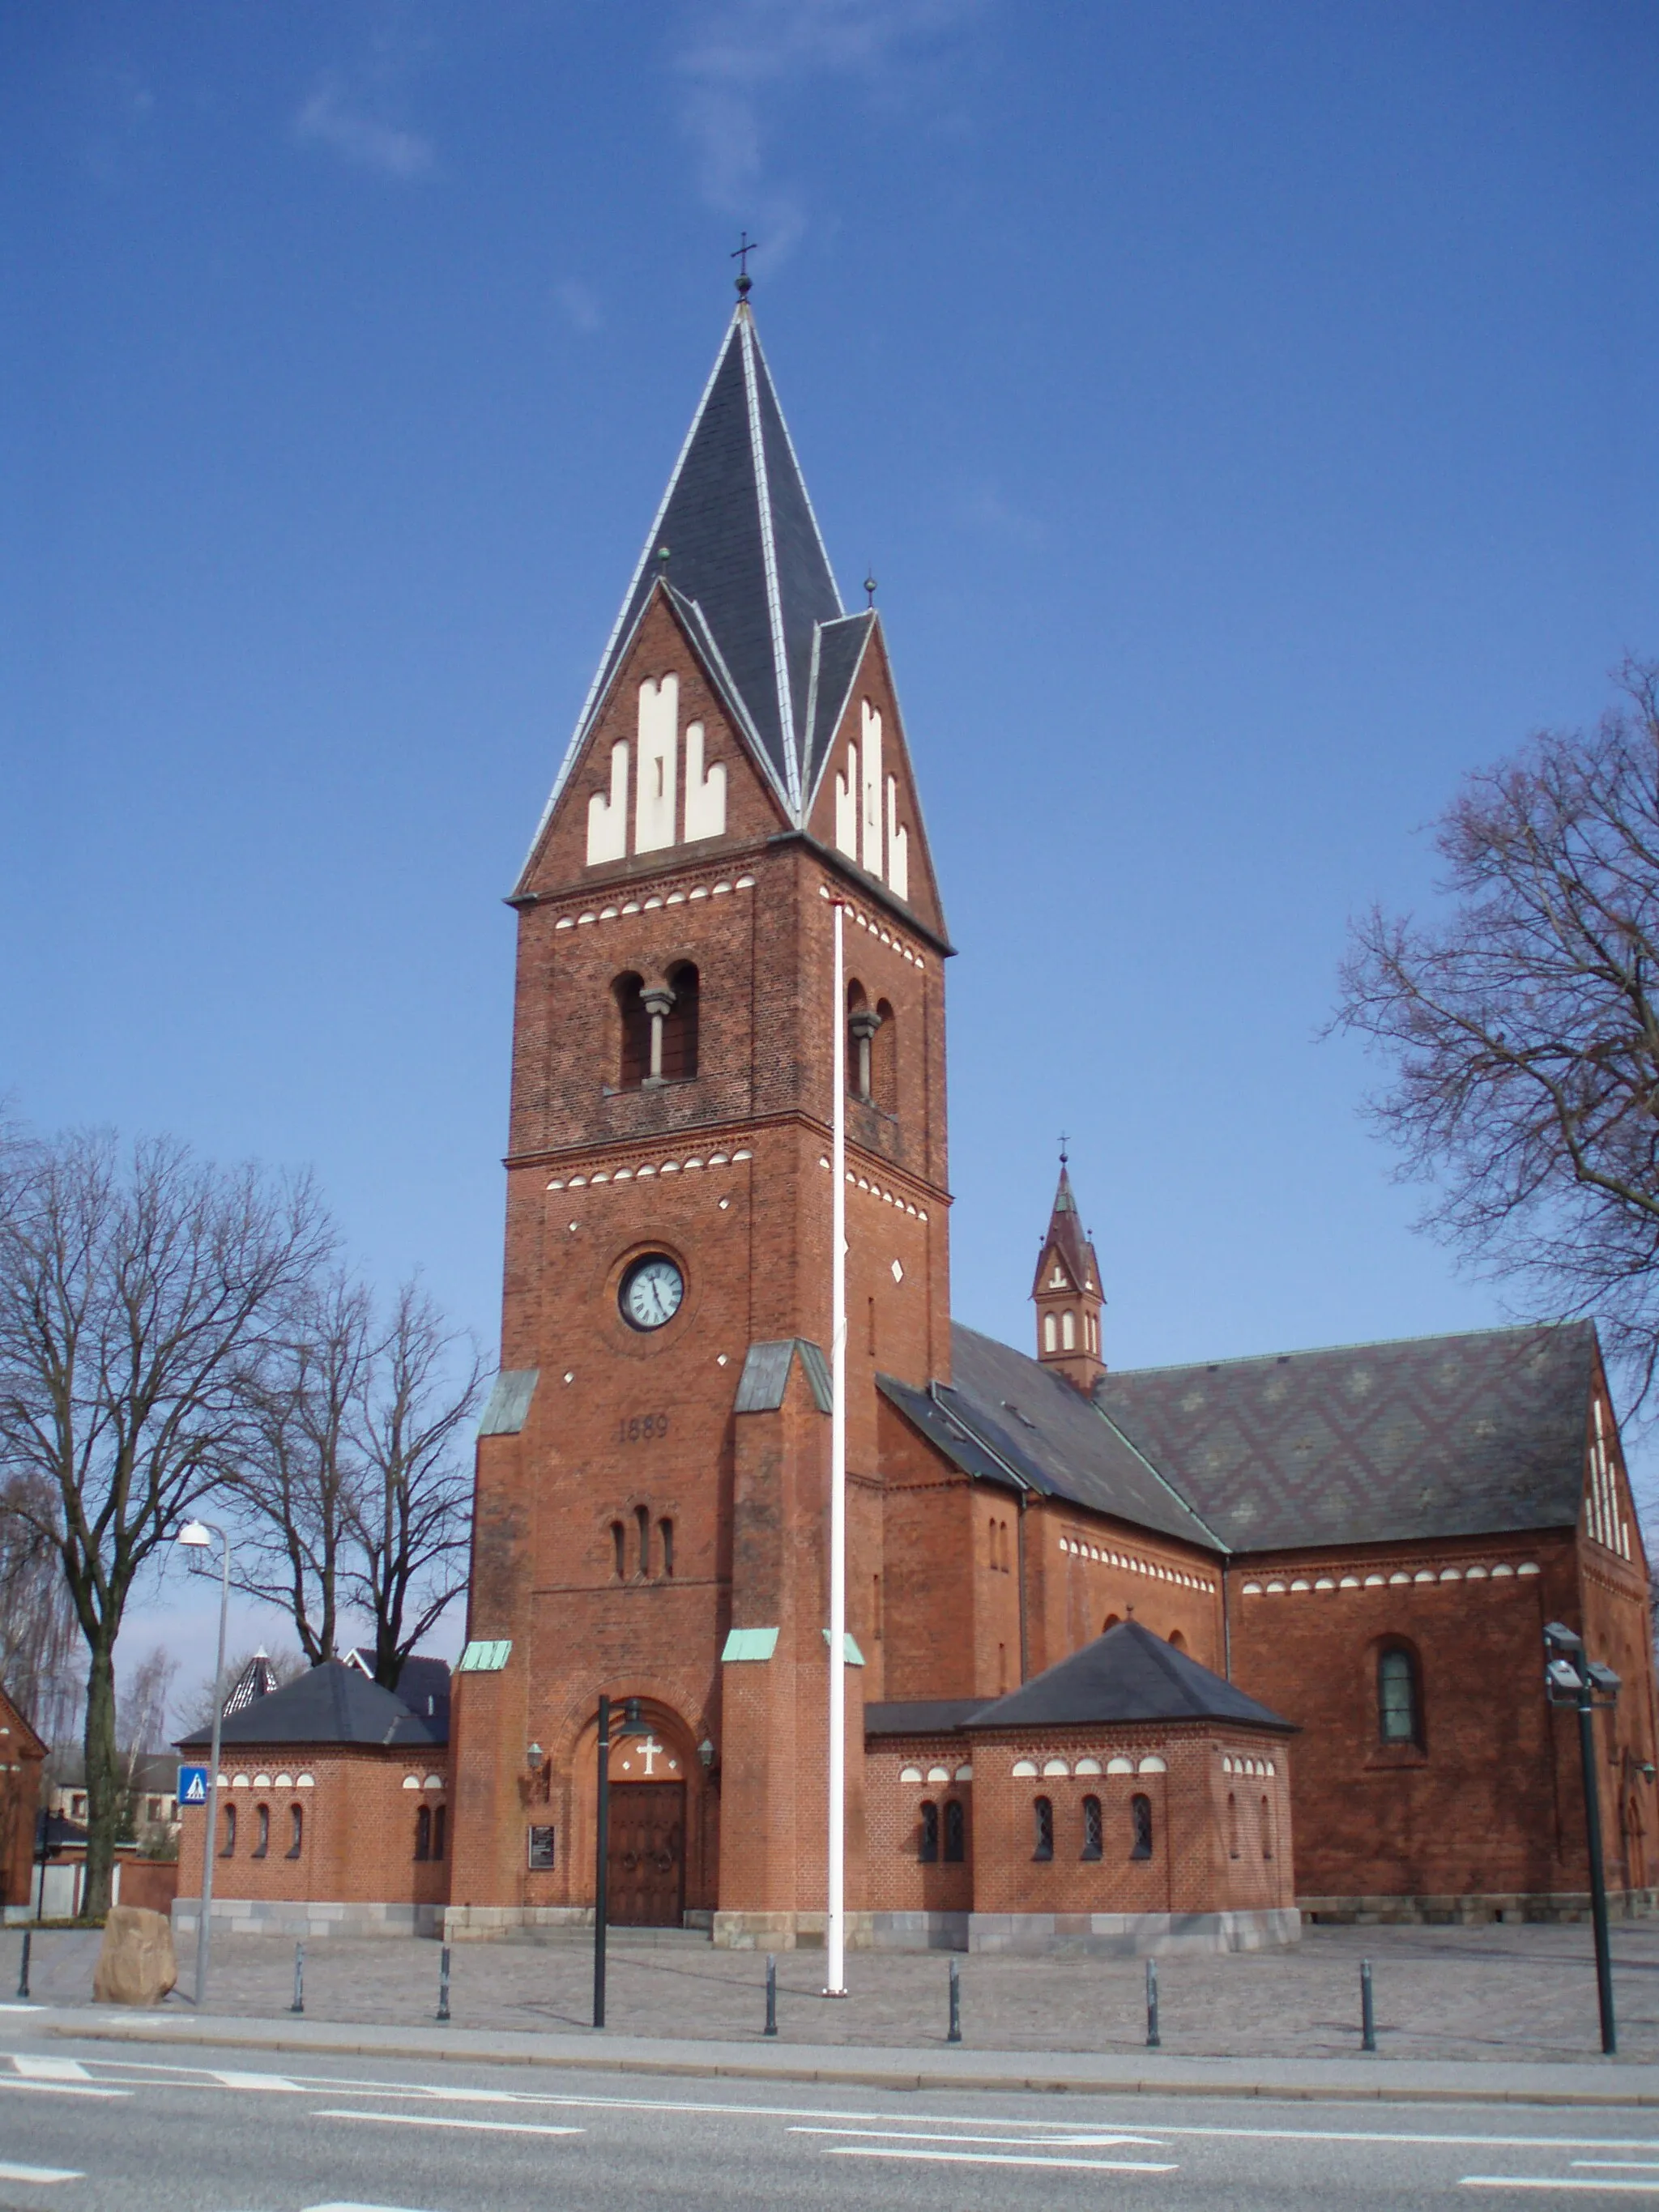 Photo showing: Herning Kirke in Herning, Denmark.

Photographer: Brams.